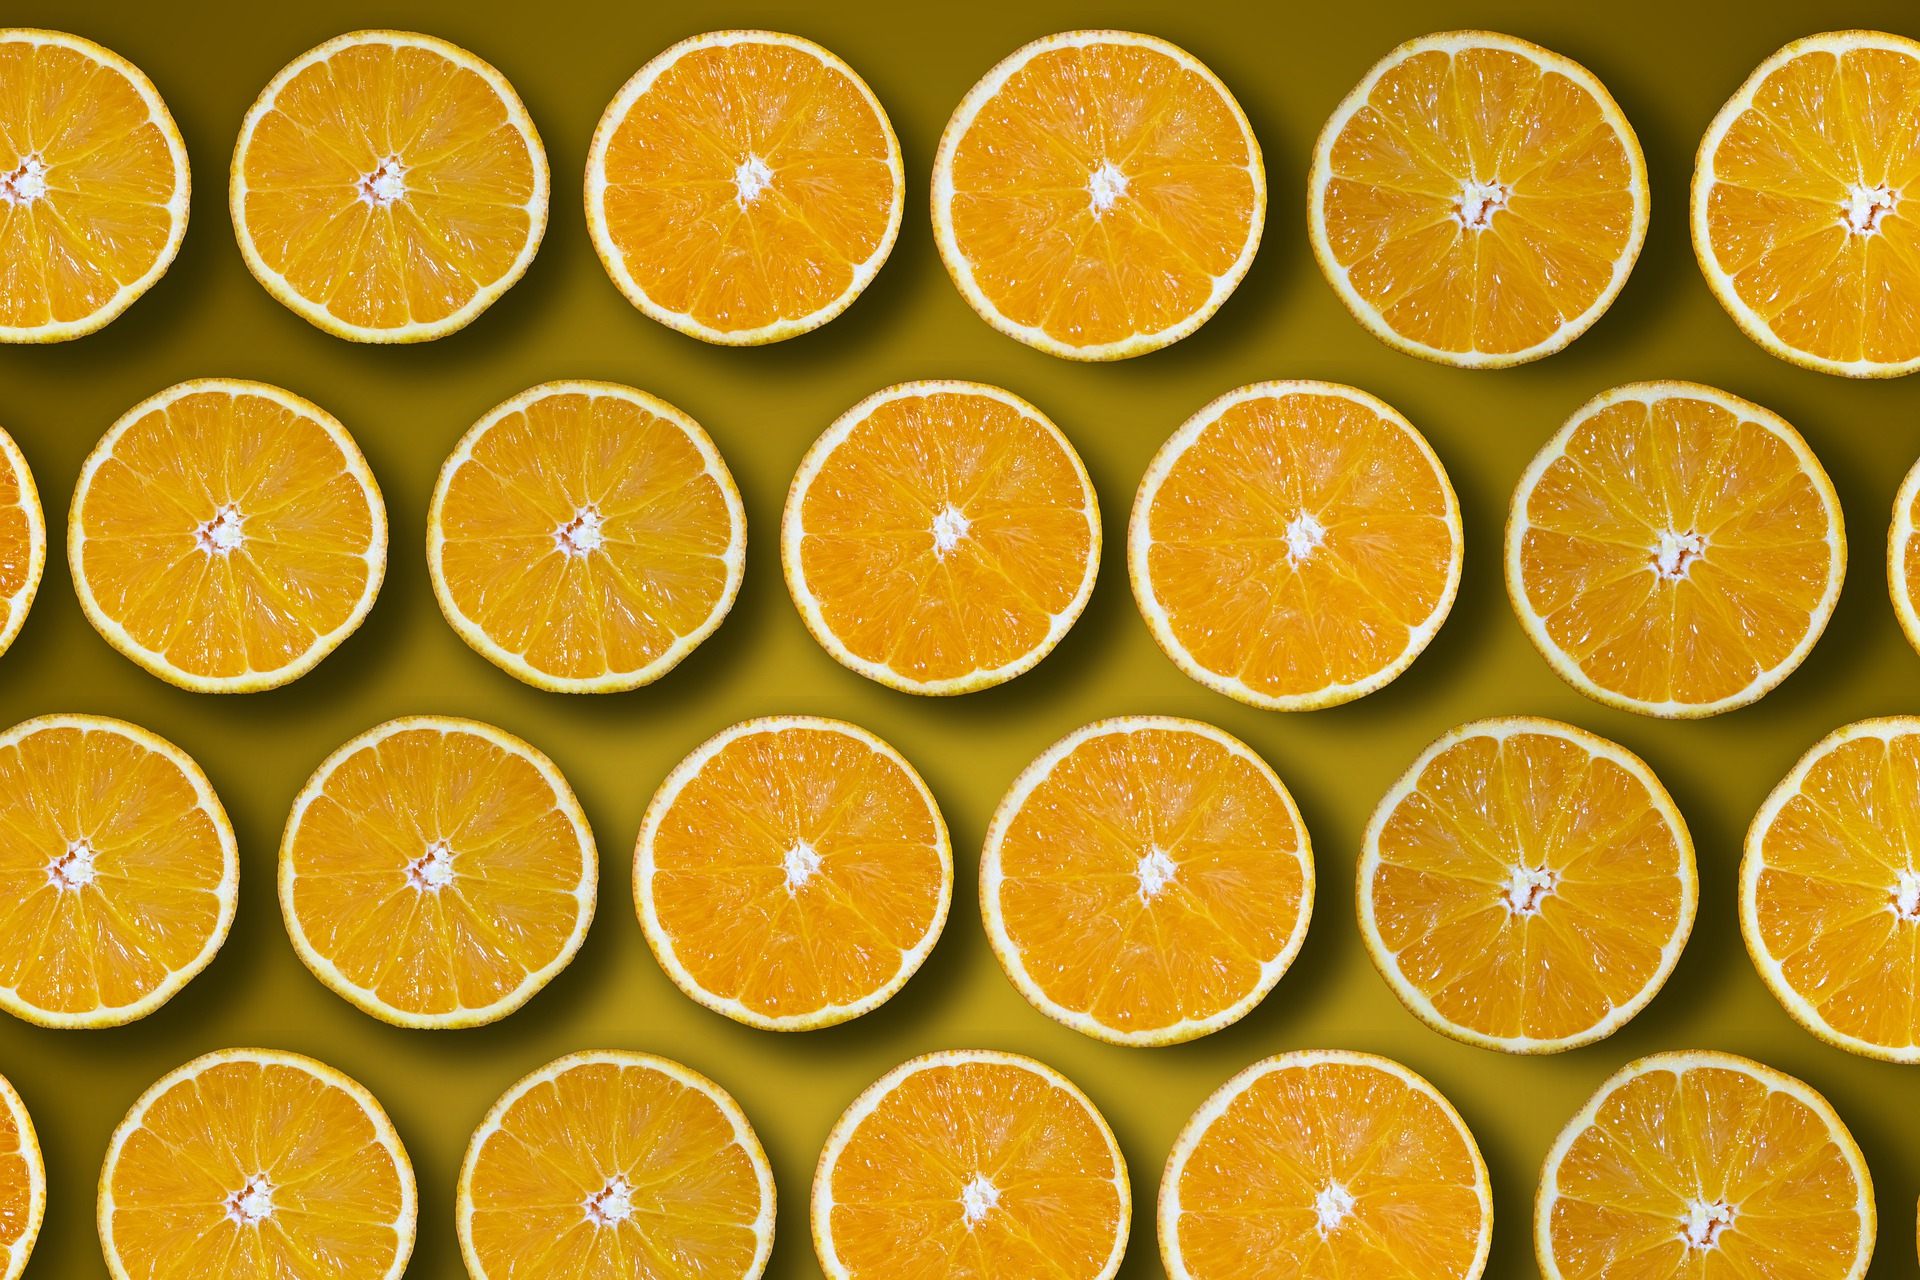 7 Outstanding Health Benefits of Oranges